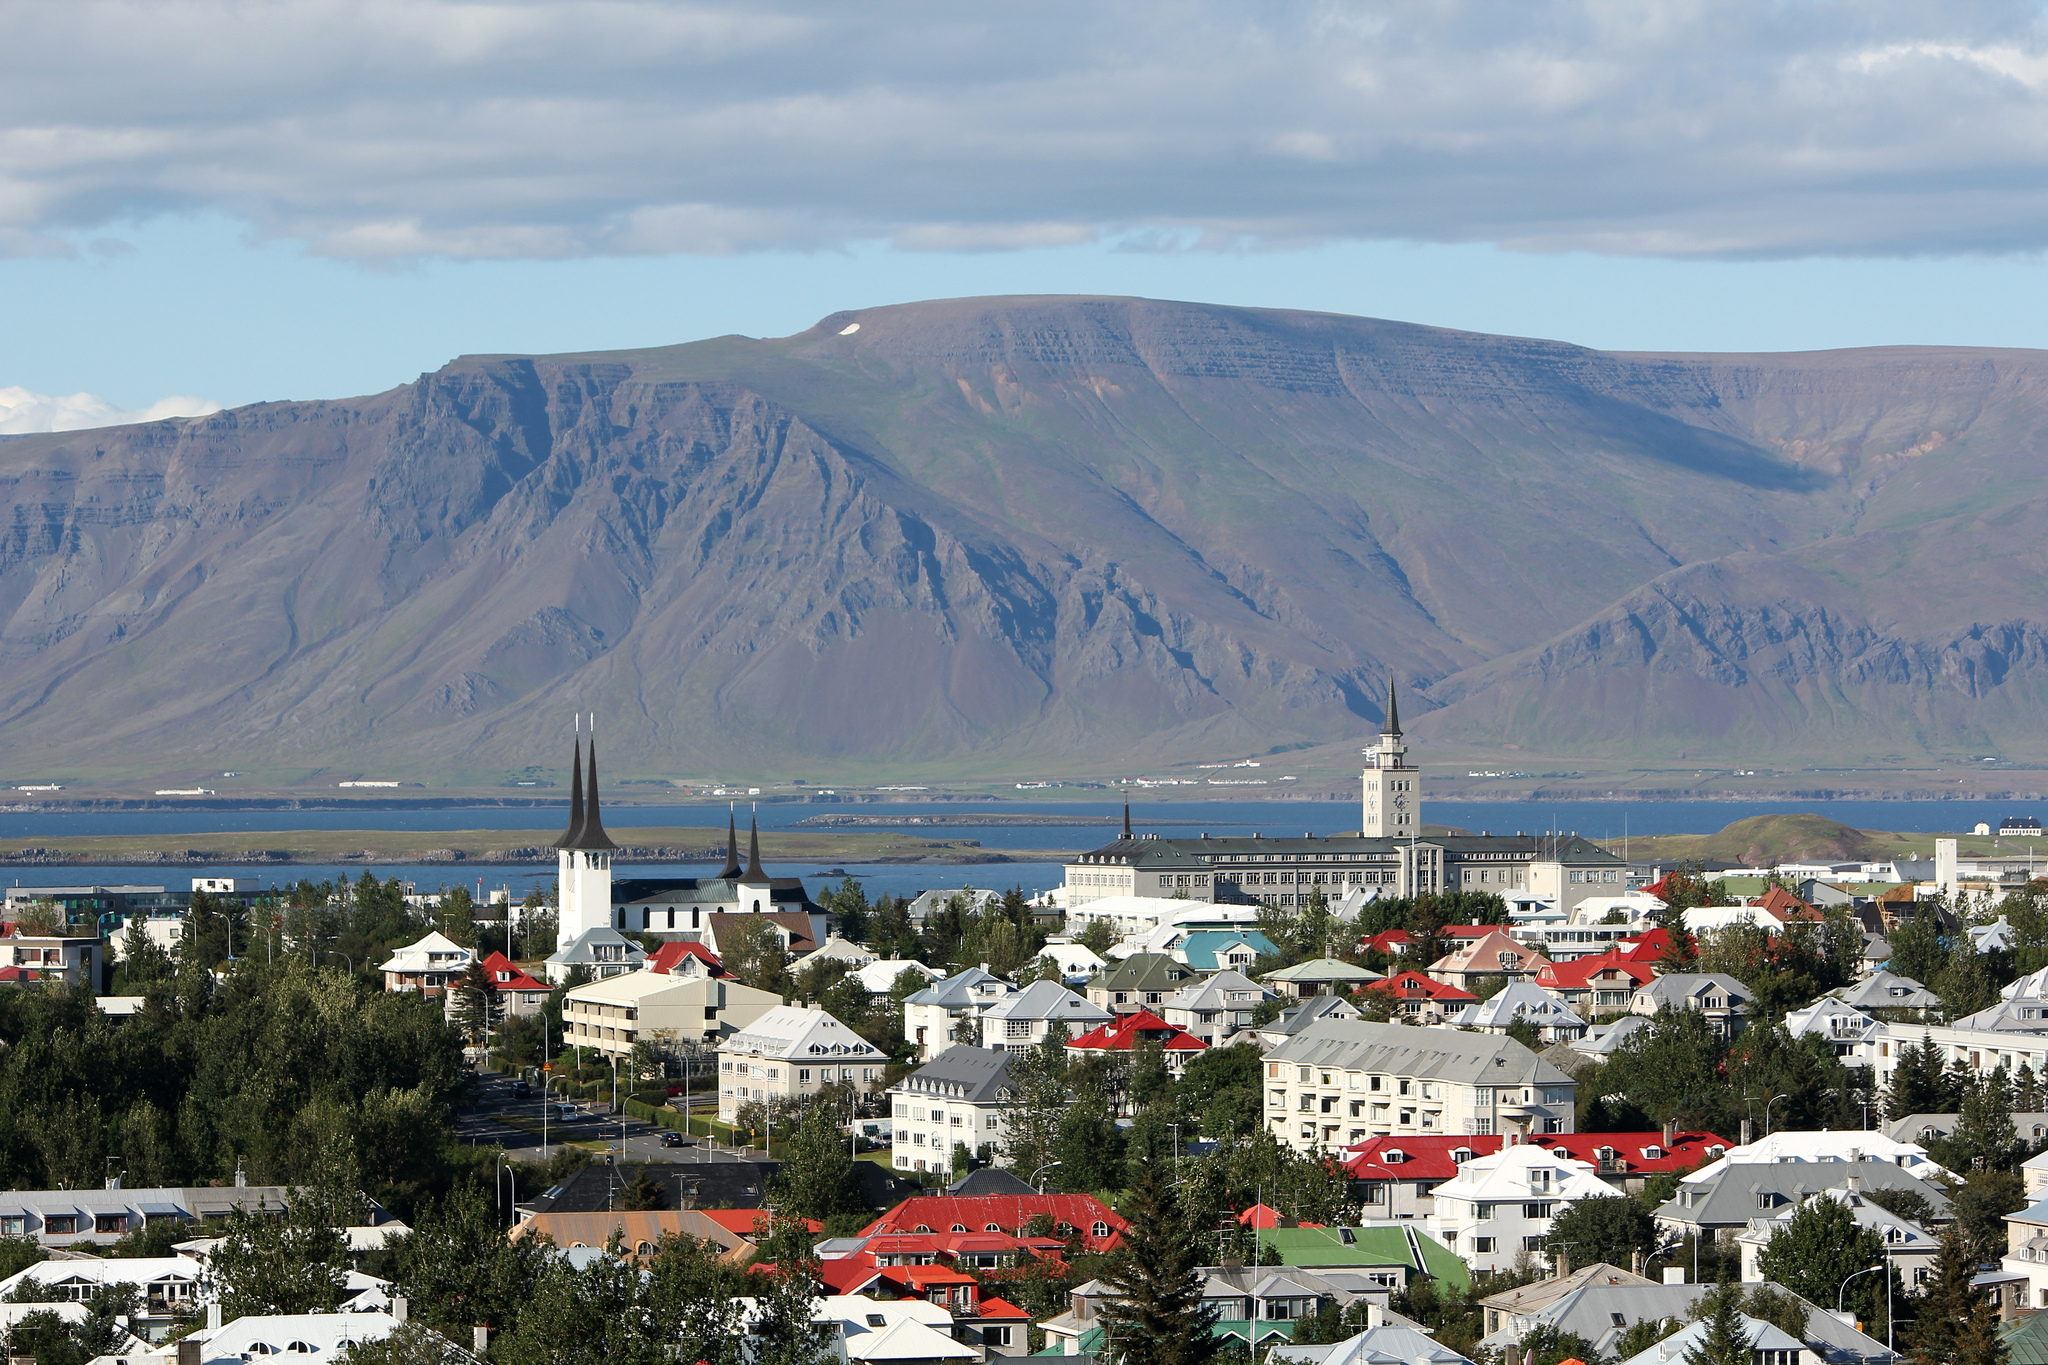 2. Reykjavik